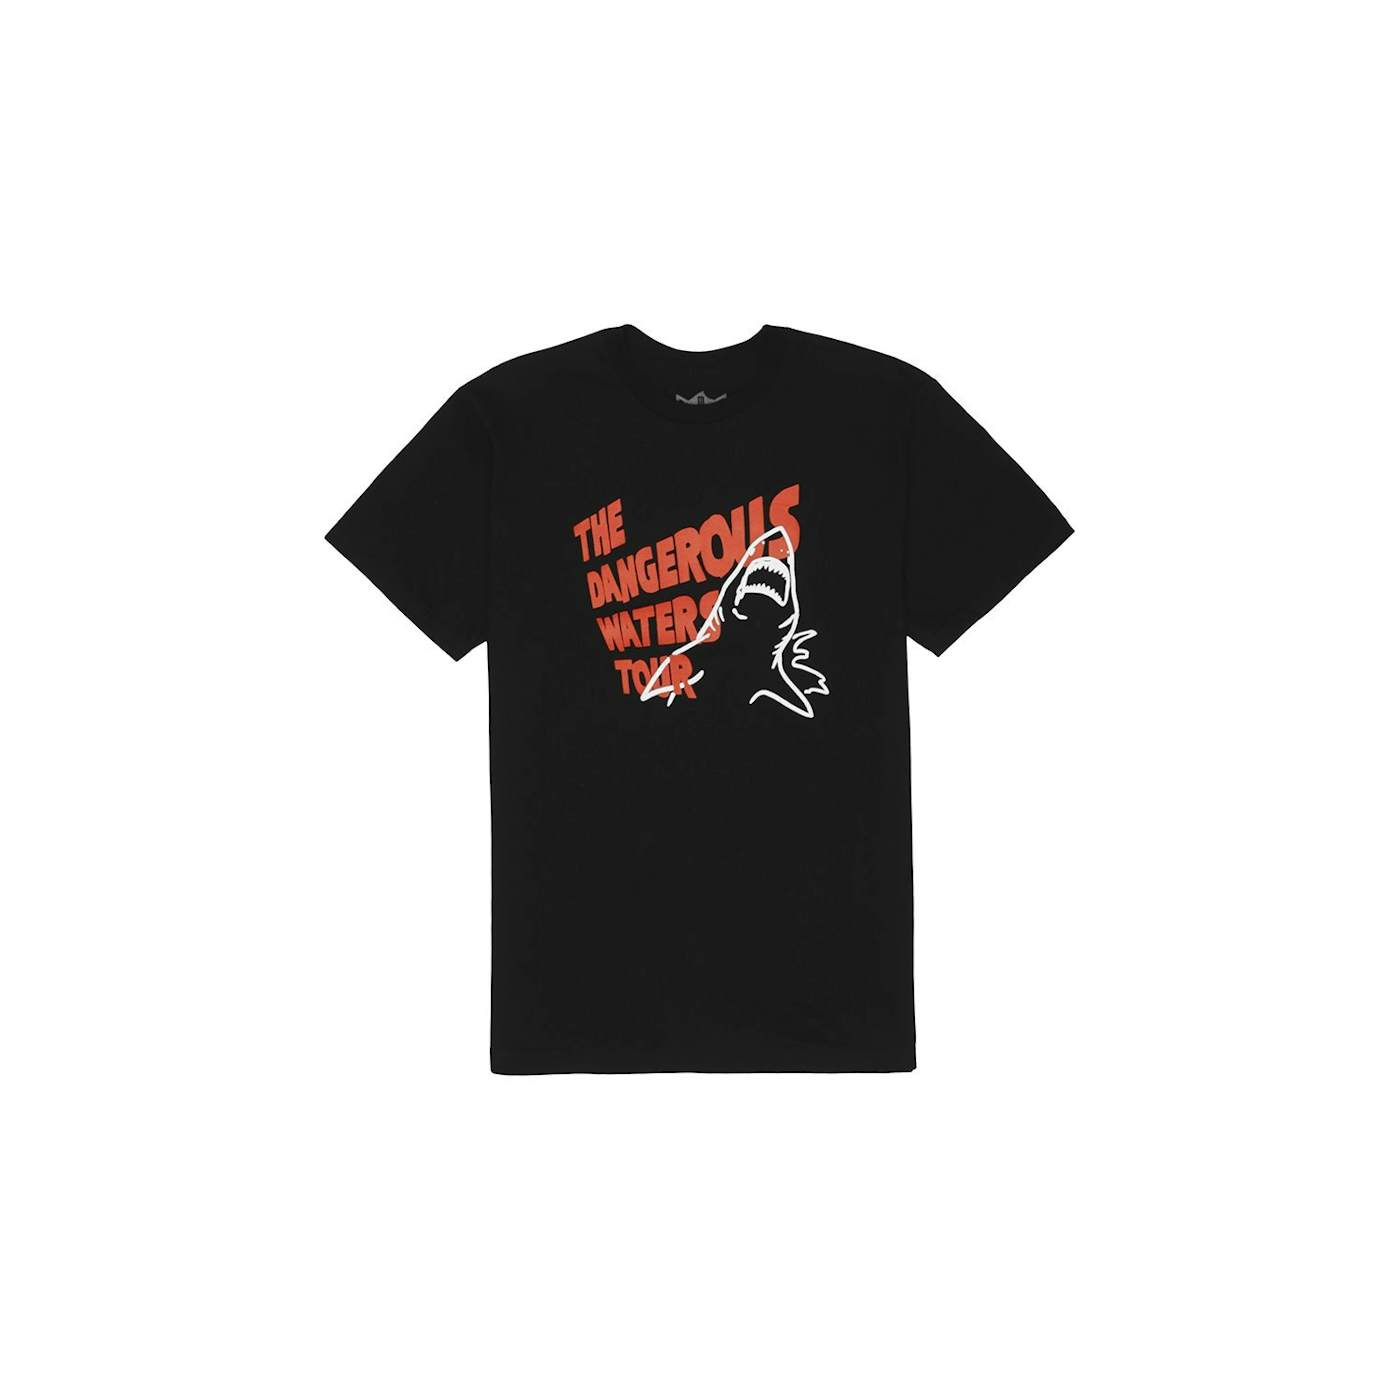 Jauz Dangerous Waters Tour T-Shirt